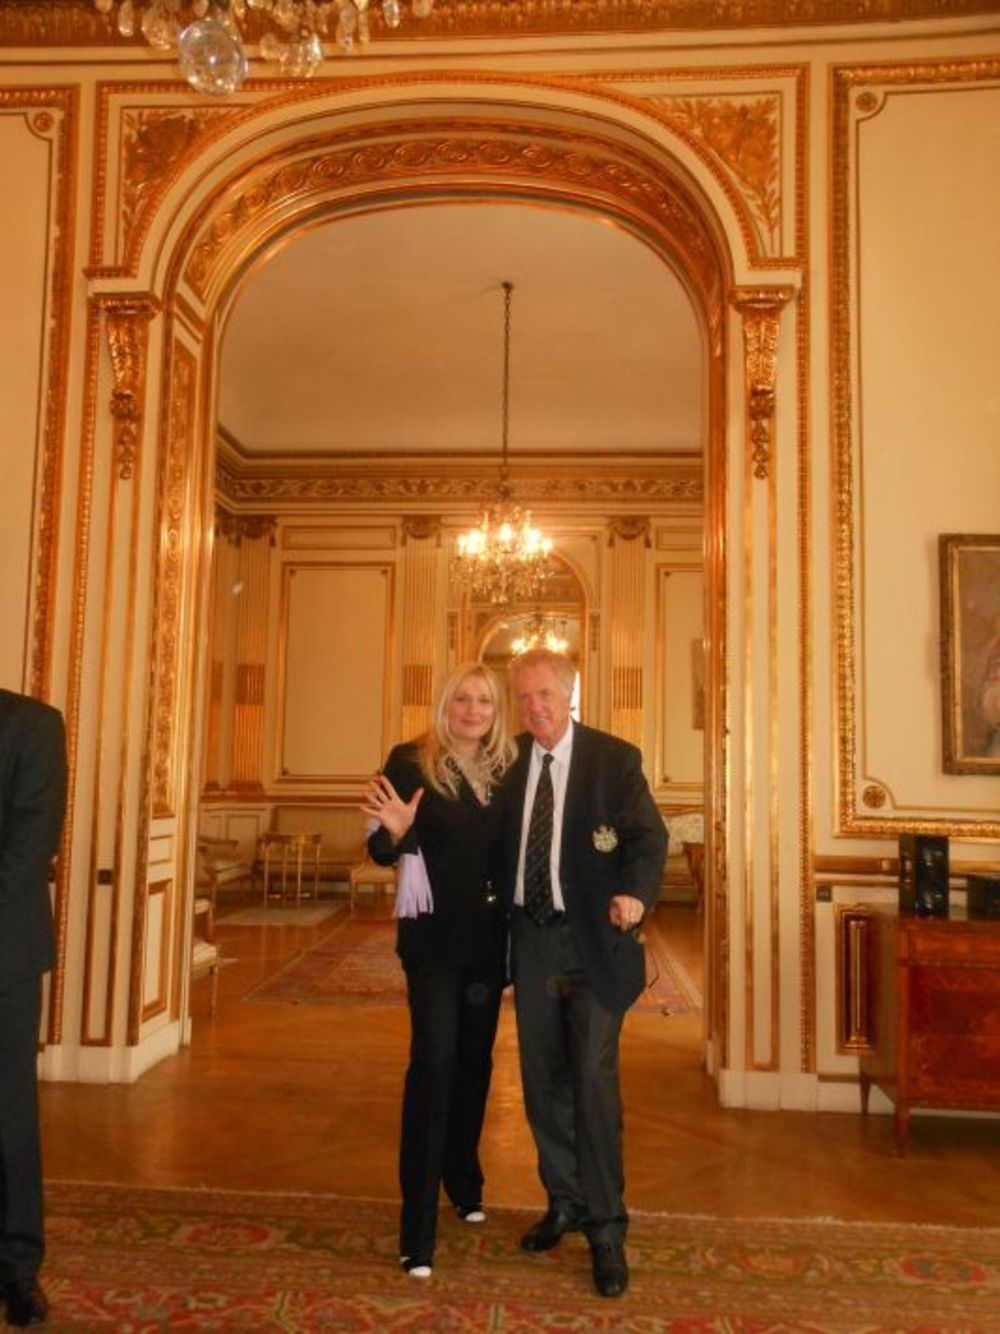 Rezidencija srpskog ambasadora Rajka Ristića u Parizu, koju je davne 1936. godine kupio knez Pavle za Kraljevinu Jugoslaviju, bila je nedavno najlepše mesto okupljanja  srpske i francuske elite, jer je pod pokroviteljstvom Kancelarije za dijasporu organizovano